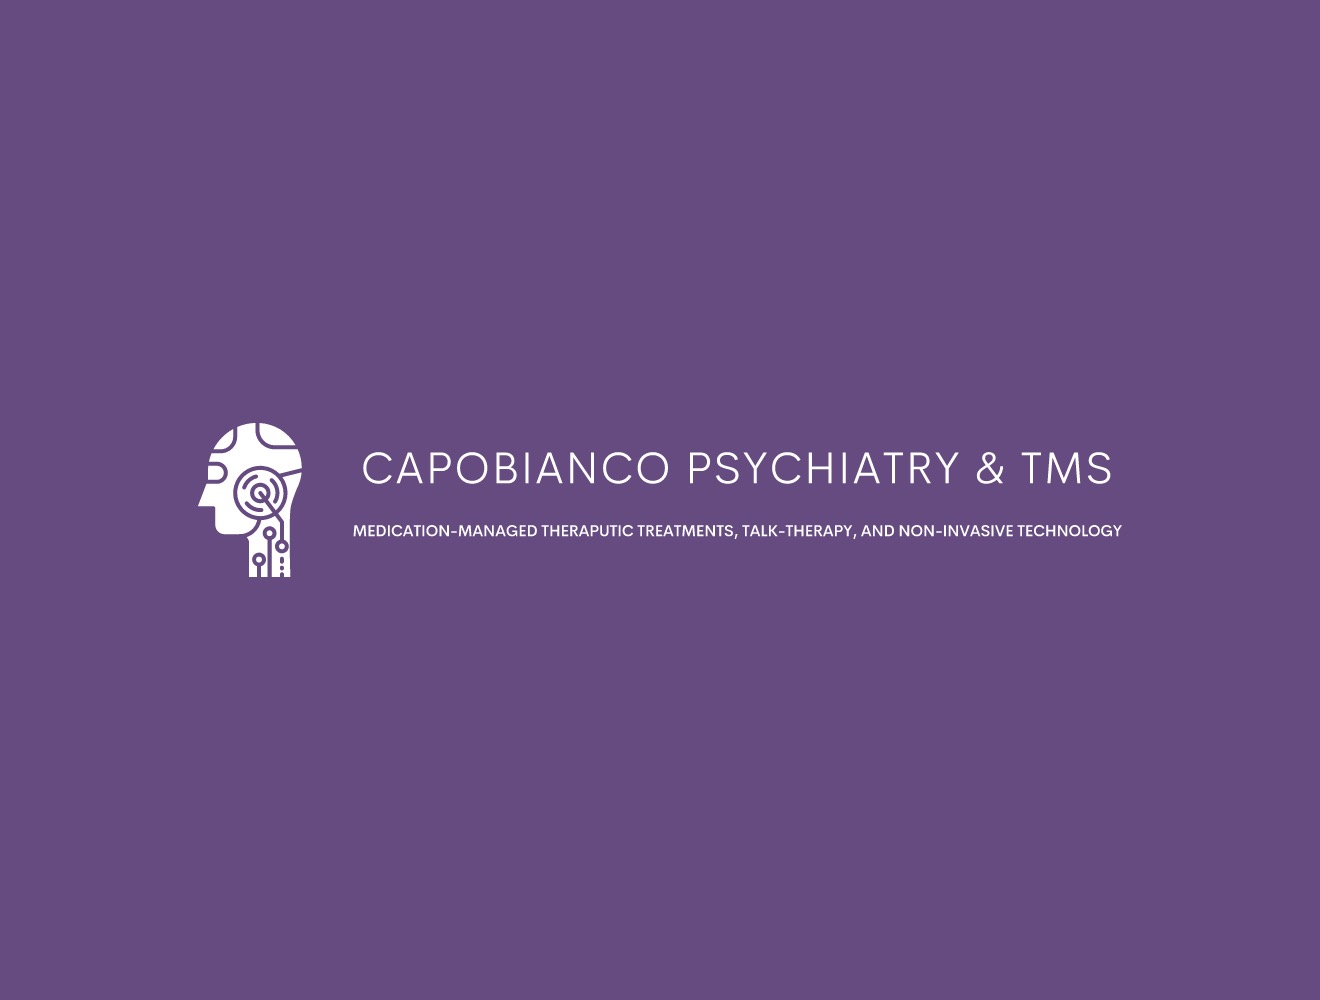 Capobianco Psychiatry & TMS logo